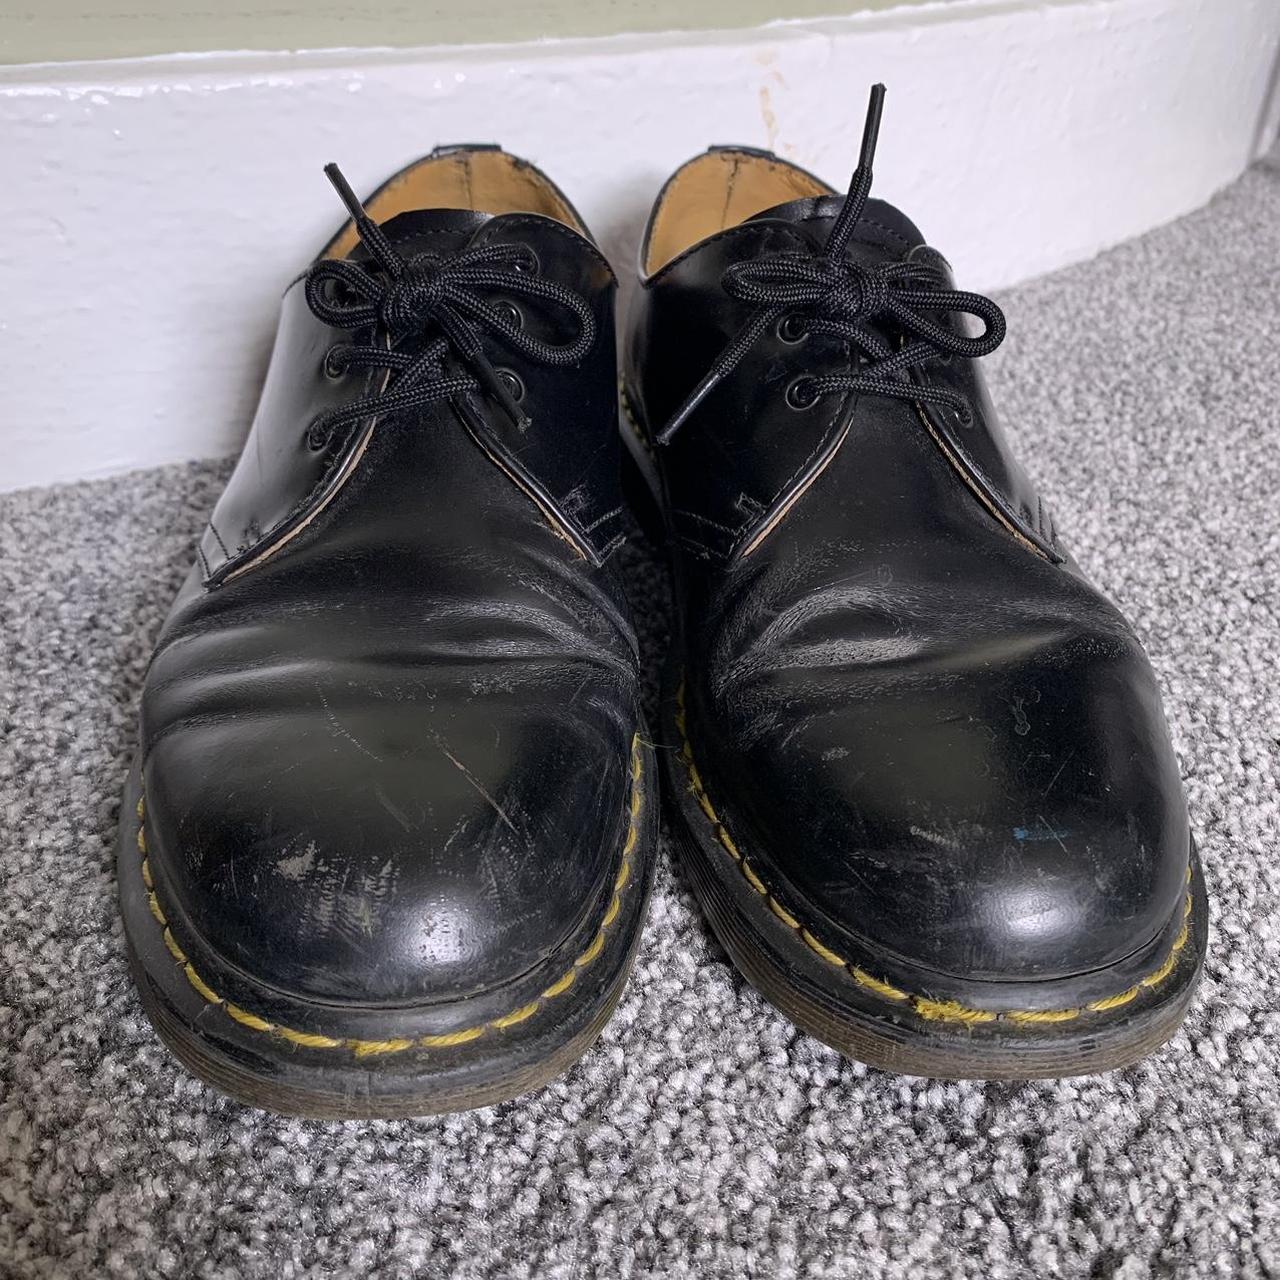 Dr. Martens 1461 leather Oxford shoes in black, UK... - Depop